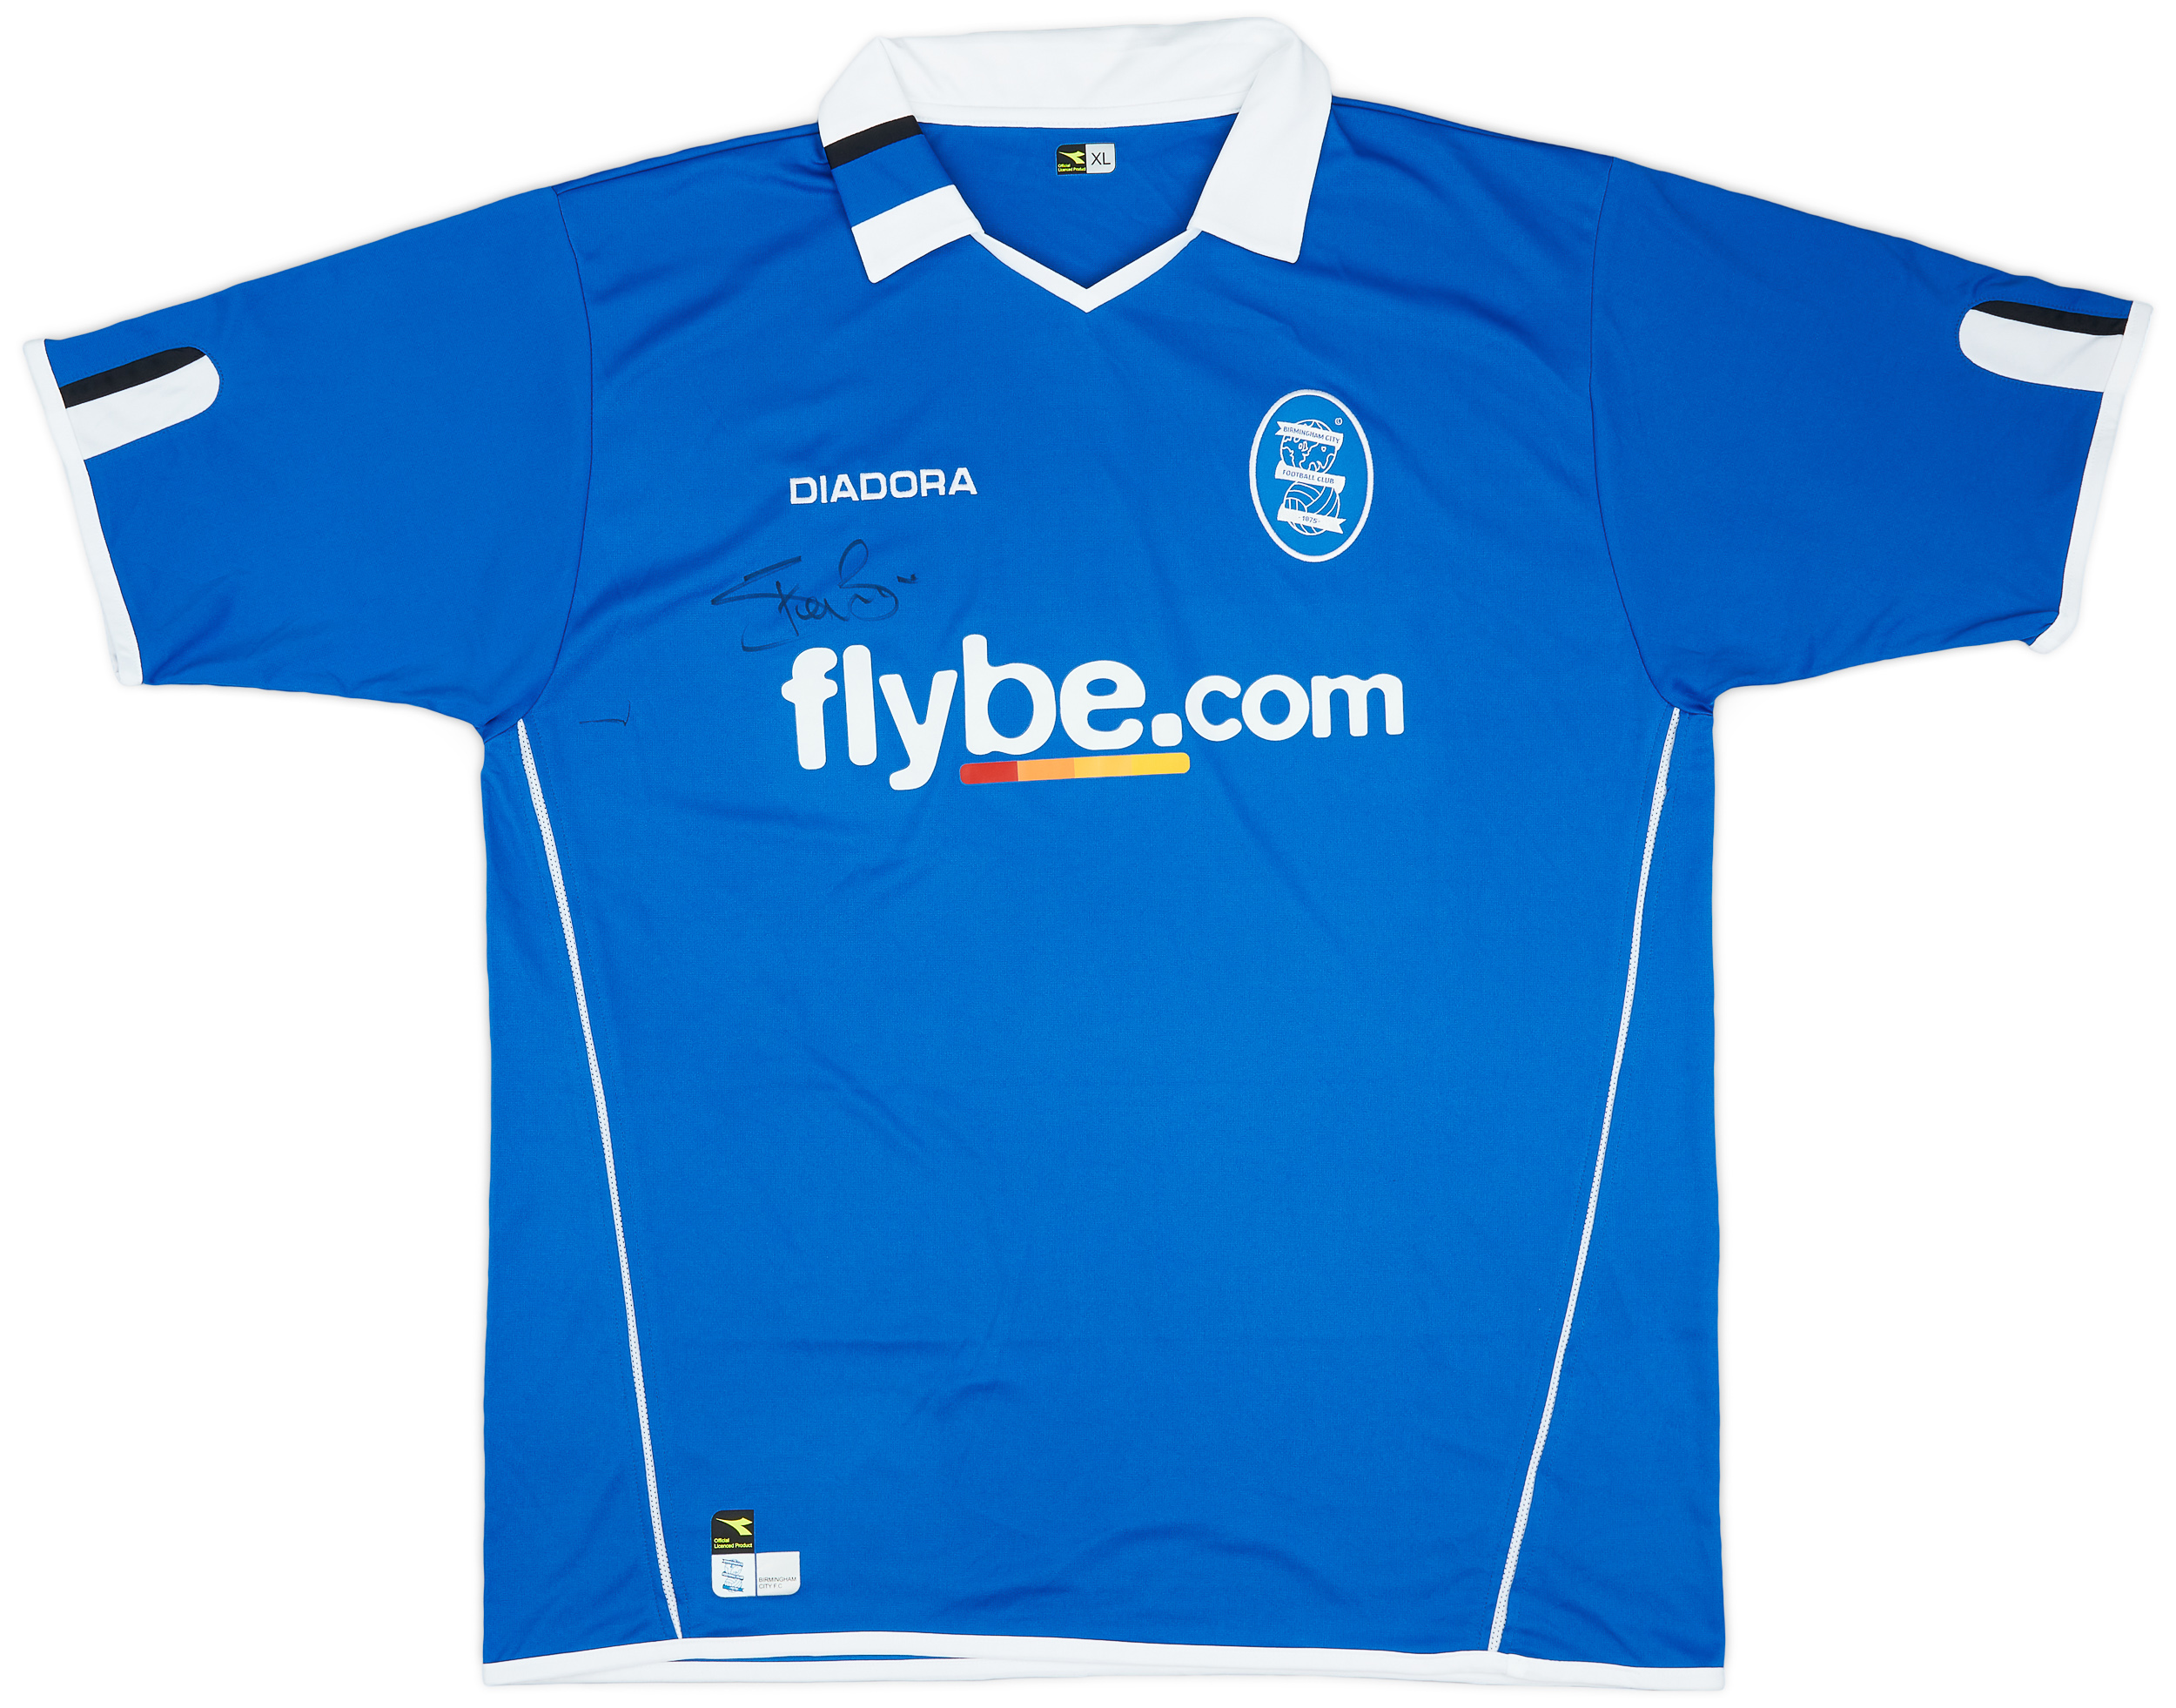 2004-05 Birmingham City Signed Home Shirt - 7/10 - ()